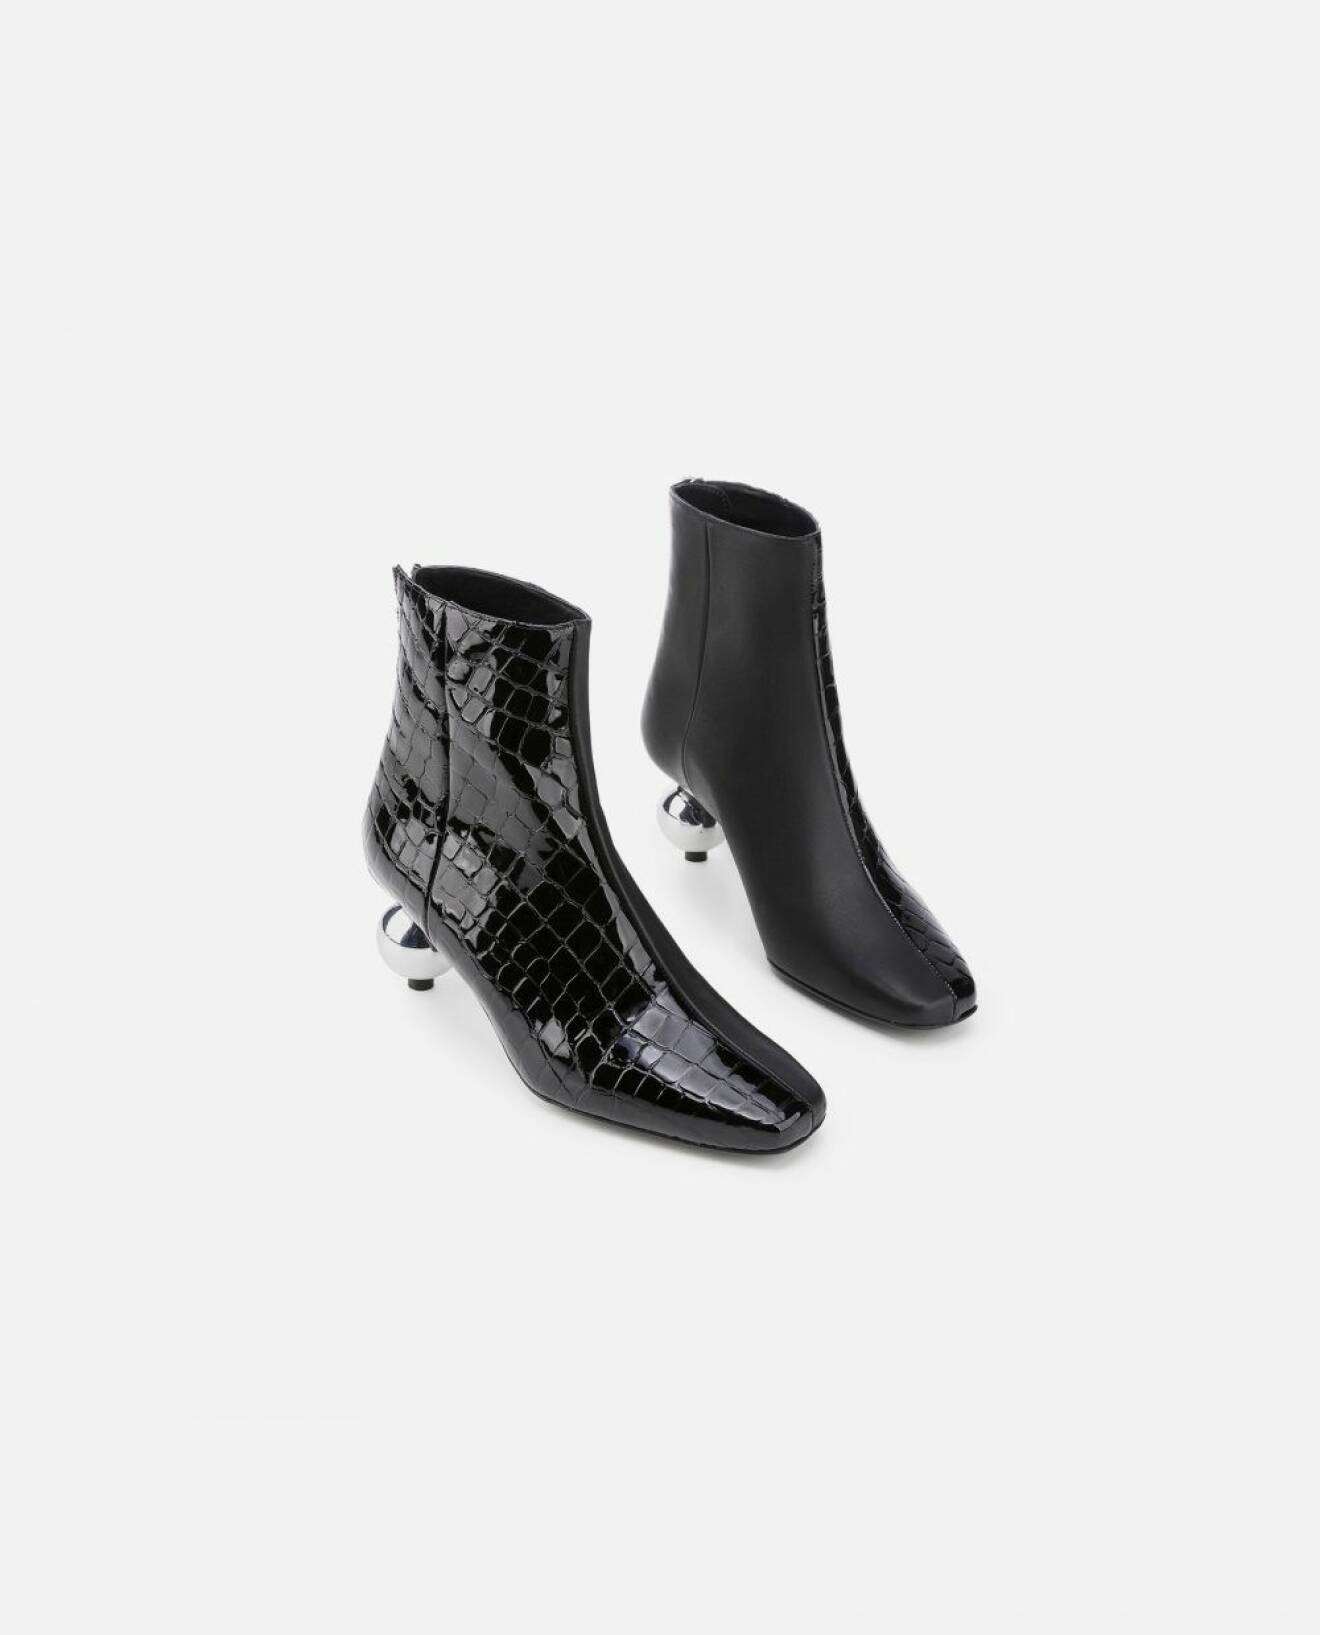 Svarta boots med en lekfull klack från designsamarbetet mellan Nina Sandbech x Flattered.